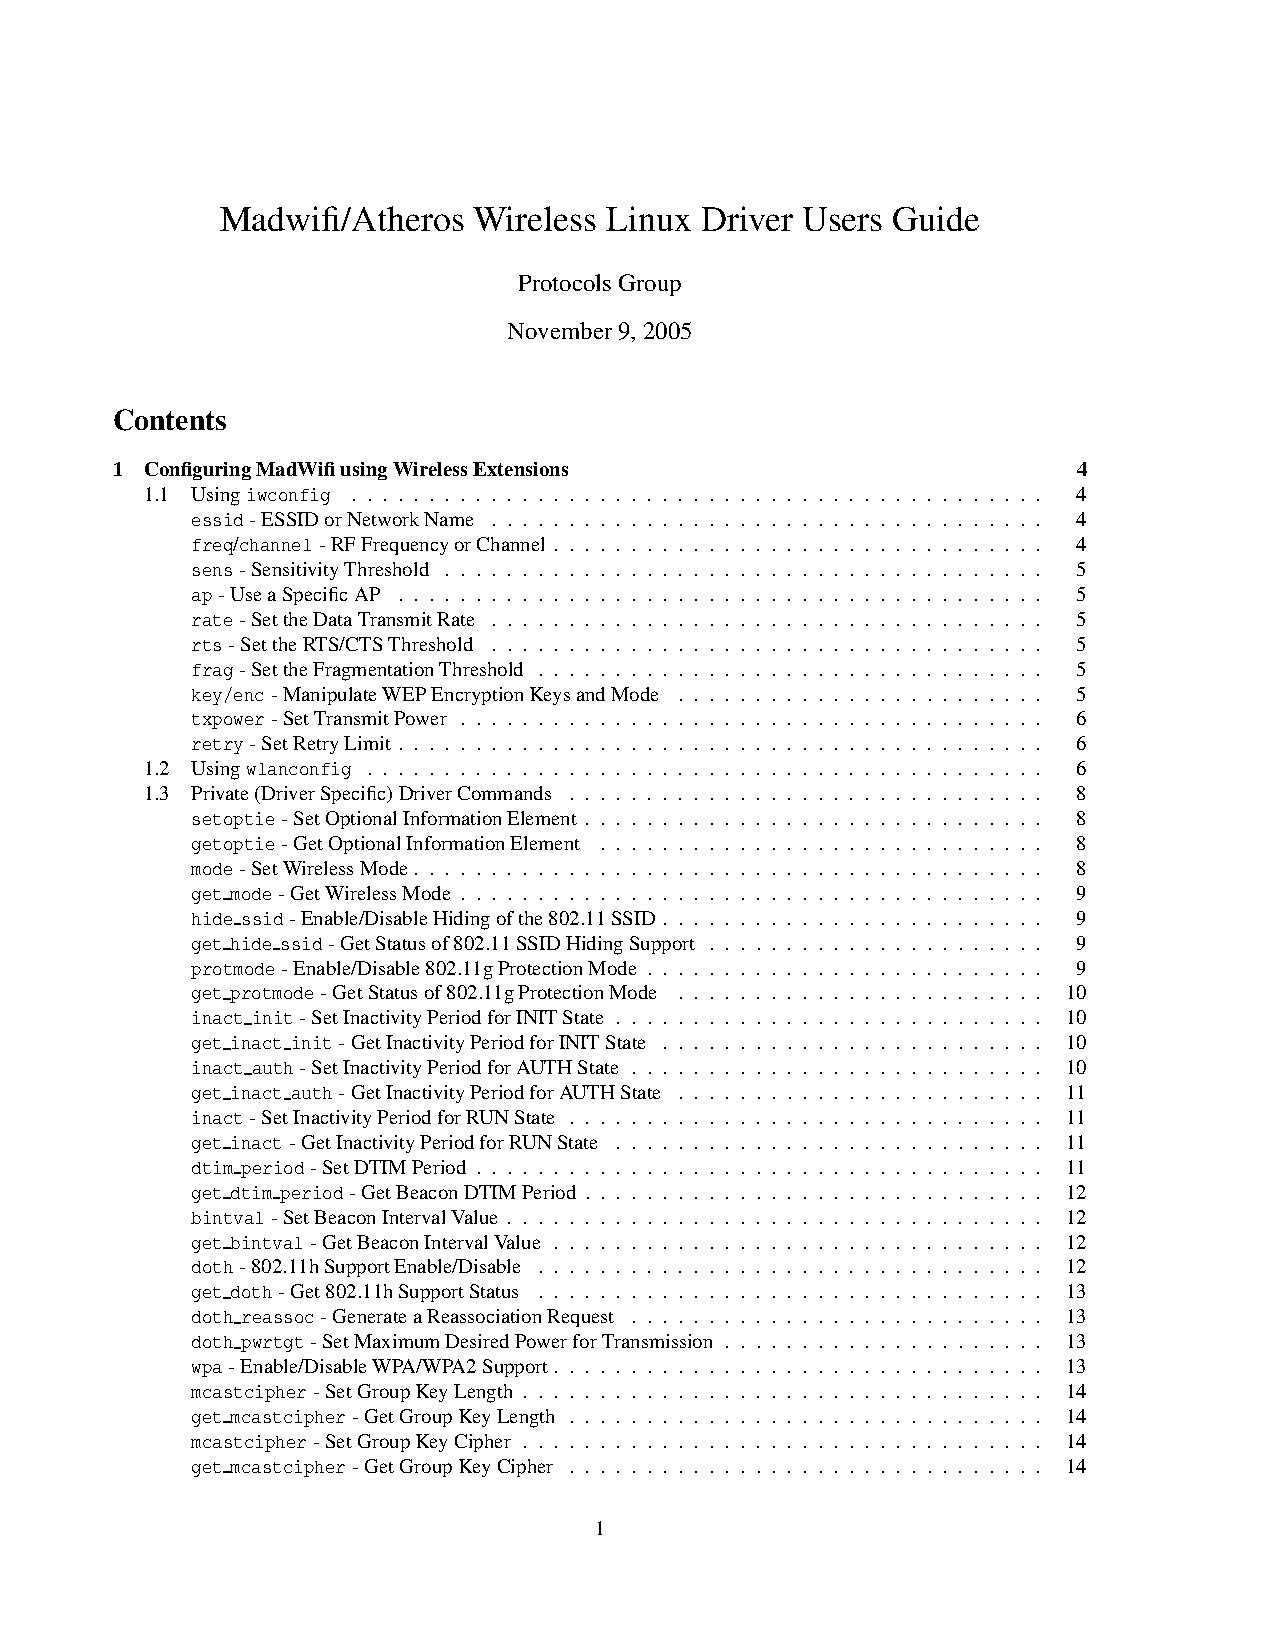 Madwifi-users-guide.pdf